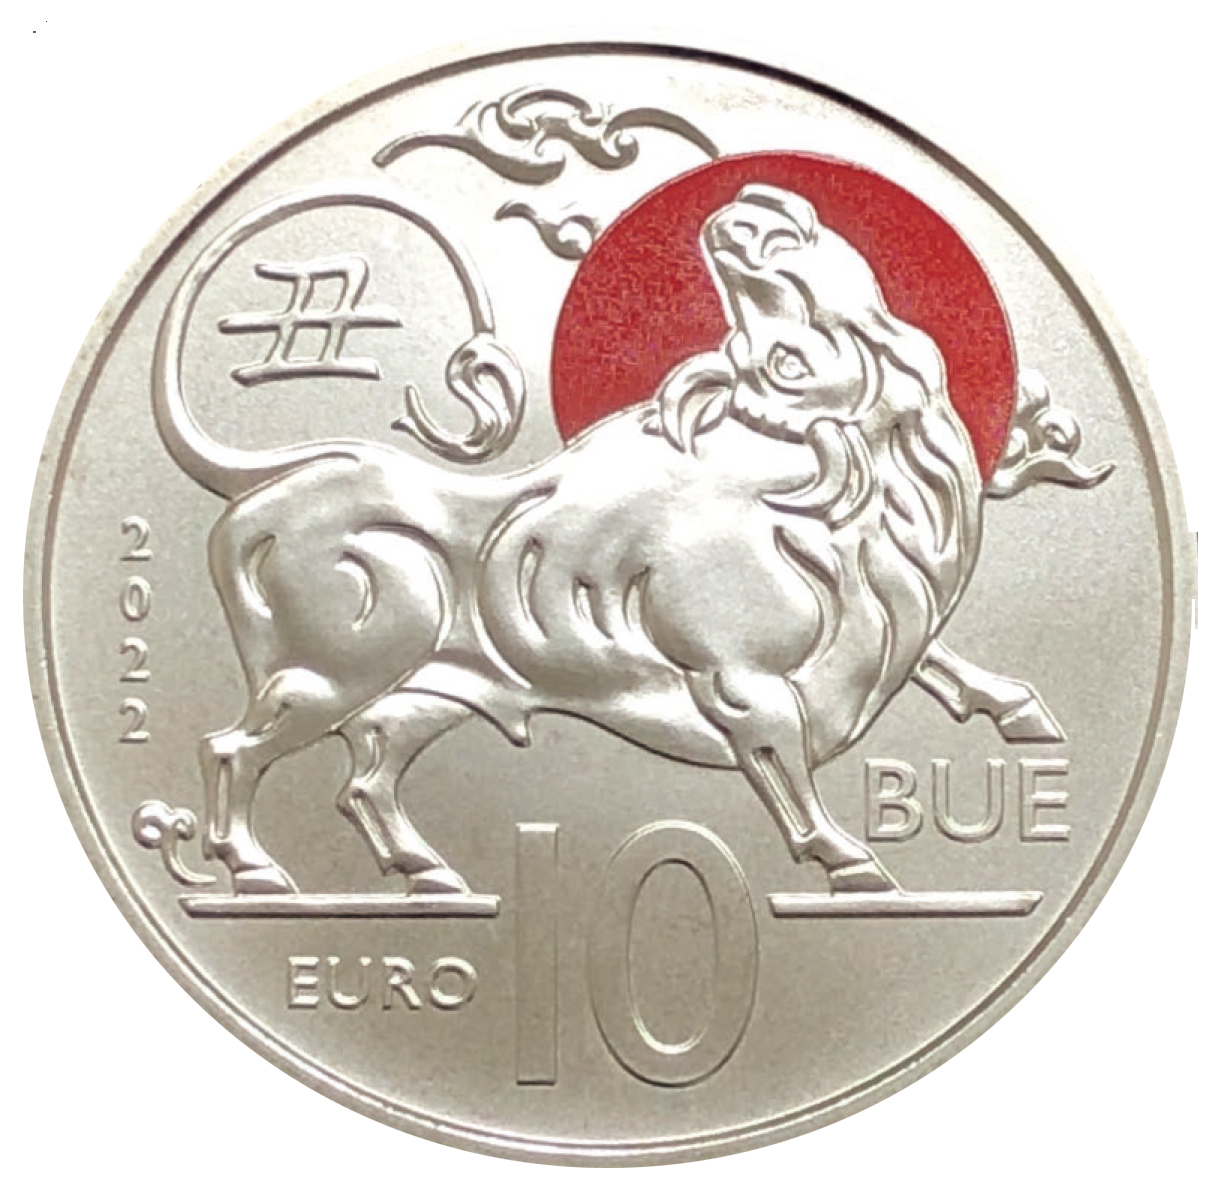 San Marino. Nuove monete da collezione dedicate al Calendario lunare cinese